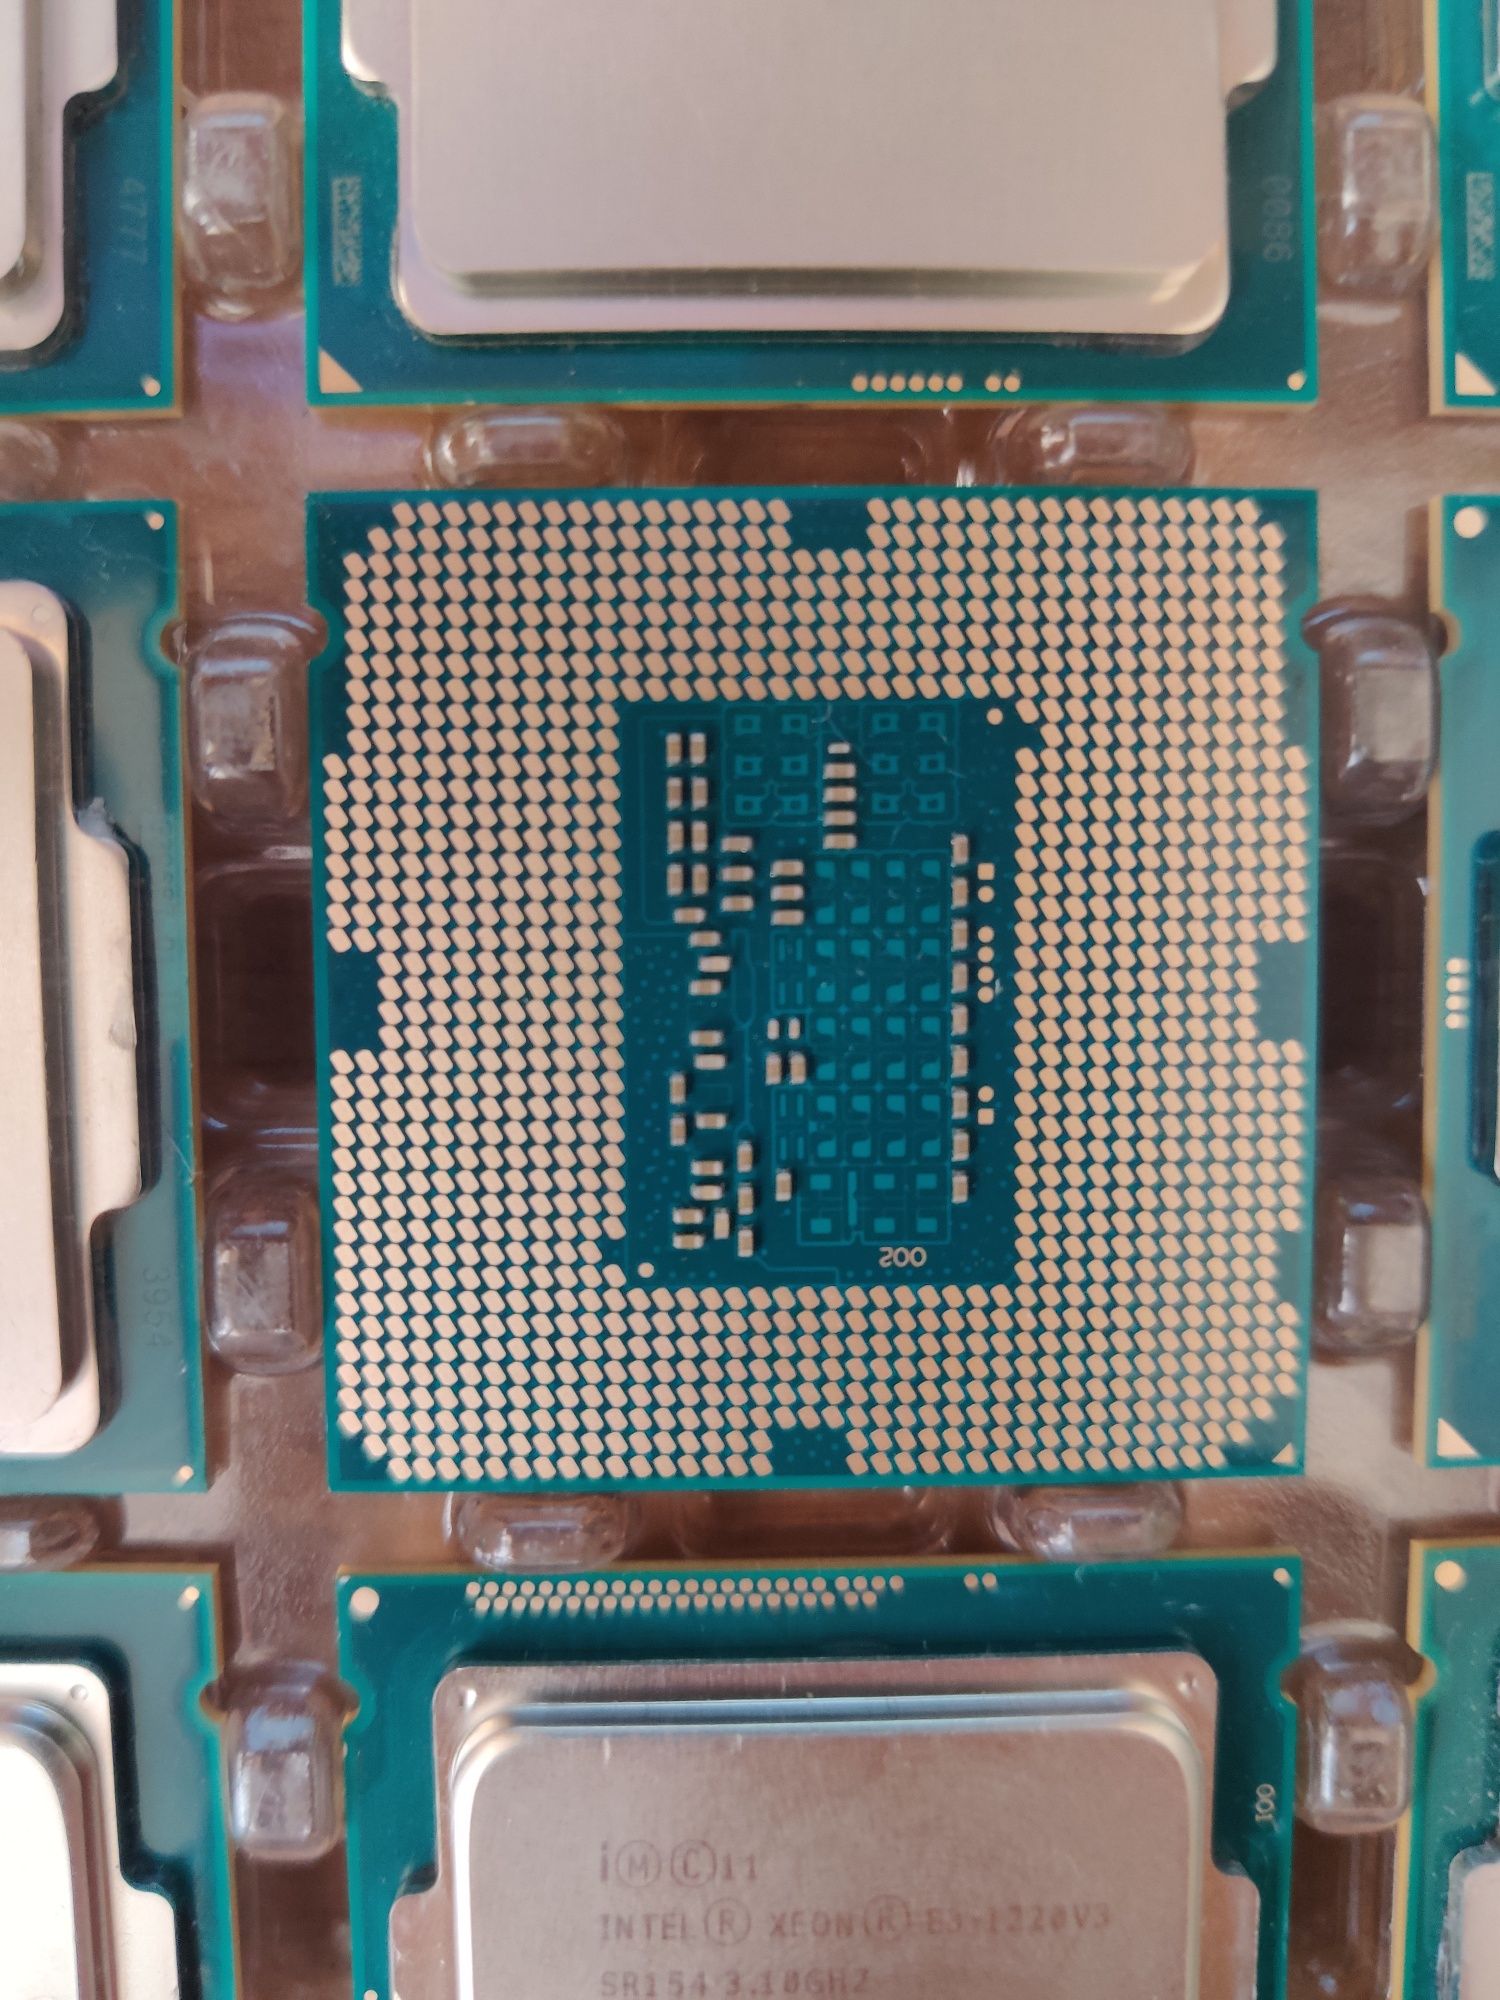 Процессор Intel Xeon e3-1220 v3 3.1-3.5GHz tray 1150 сокет